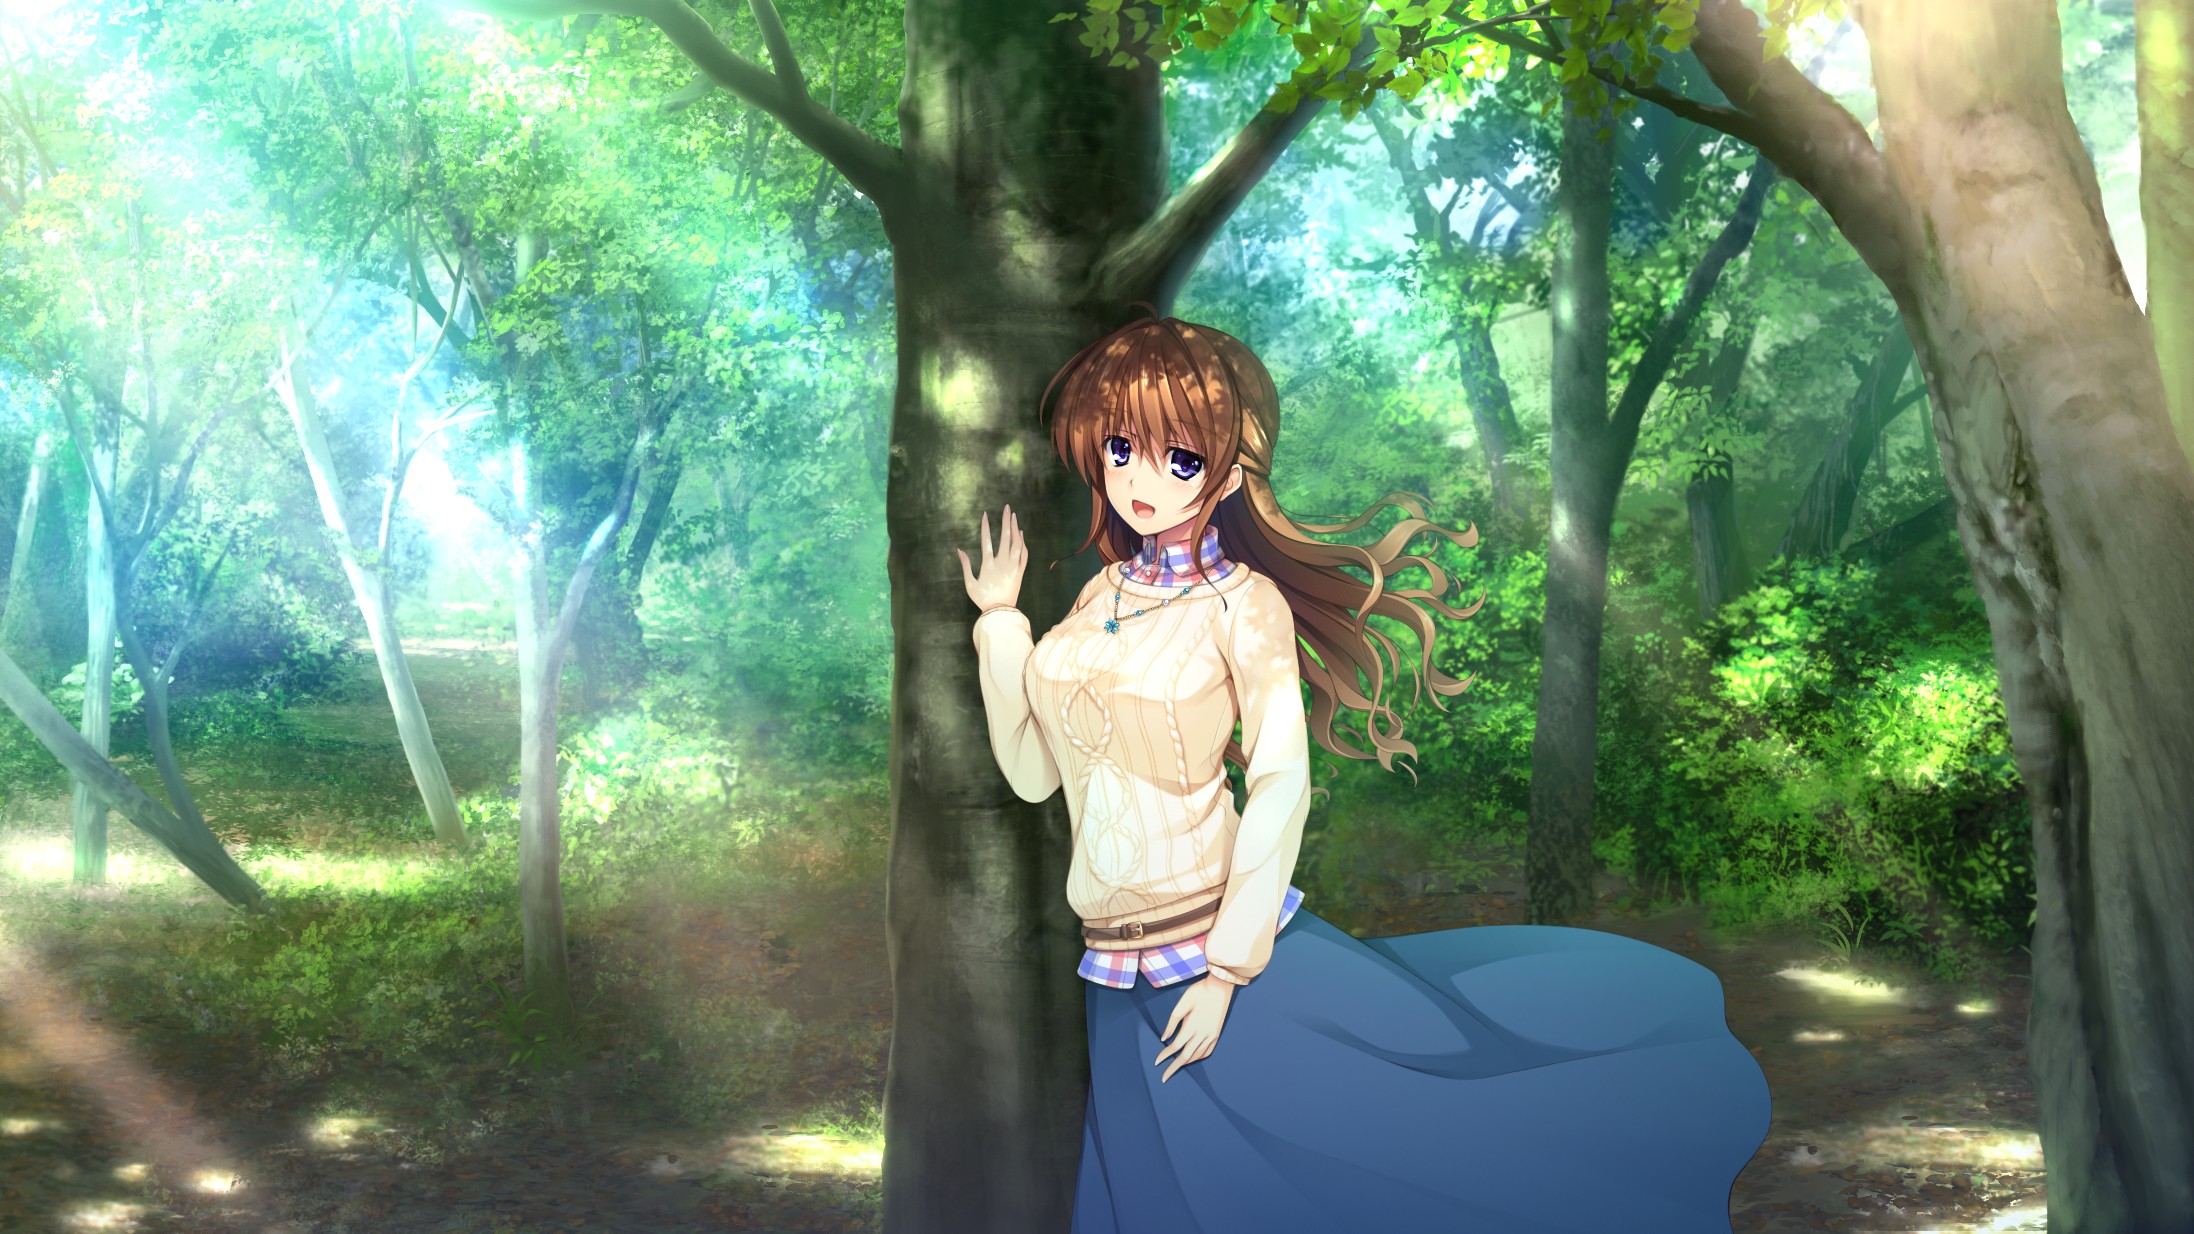 anime girls, Long hair, Trees Wallpaper